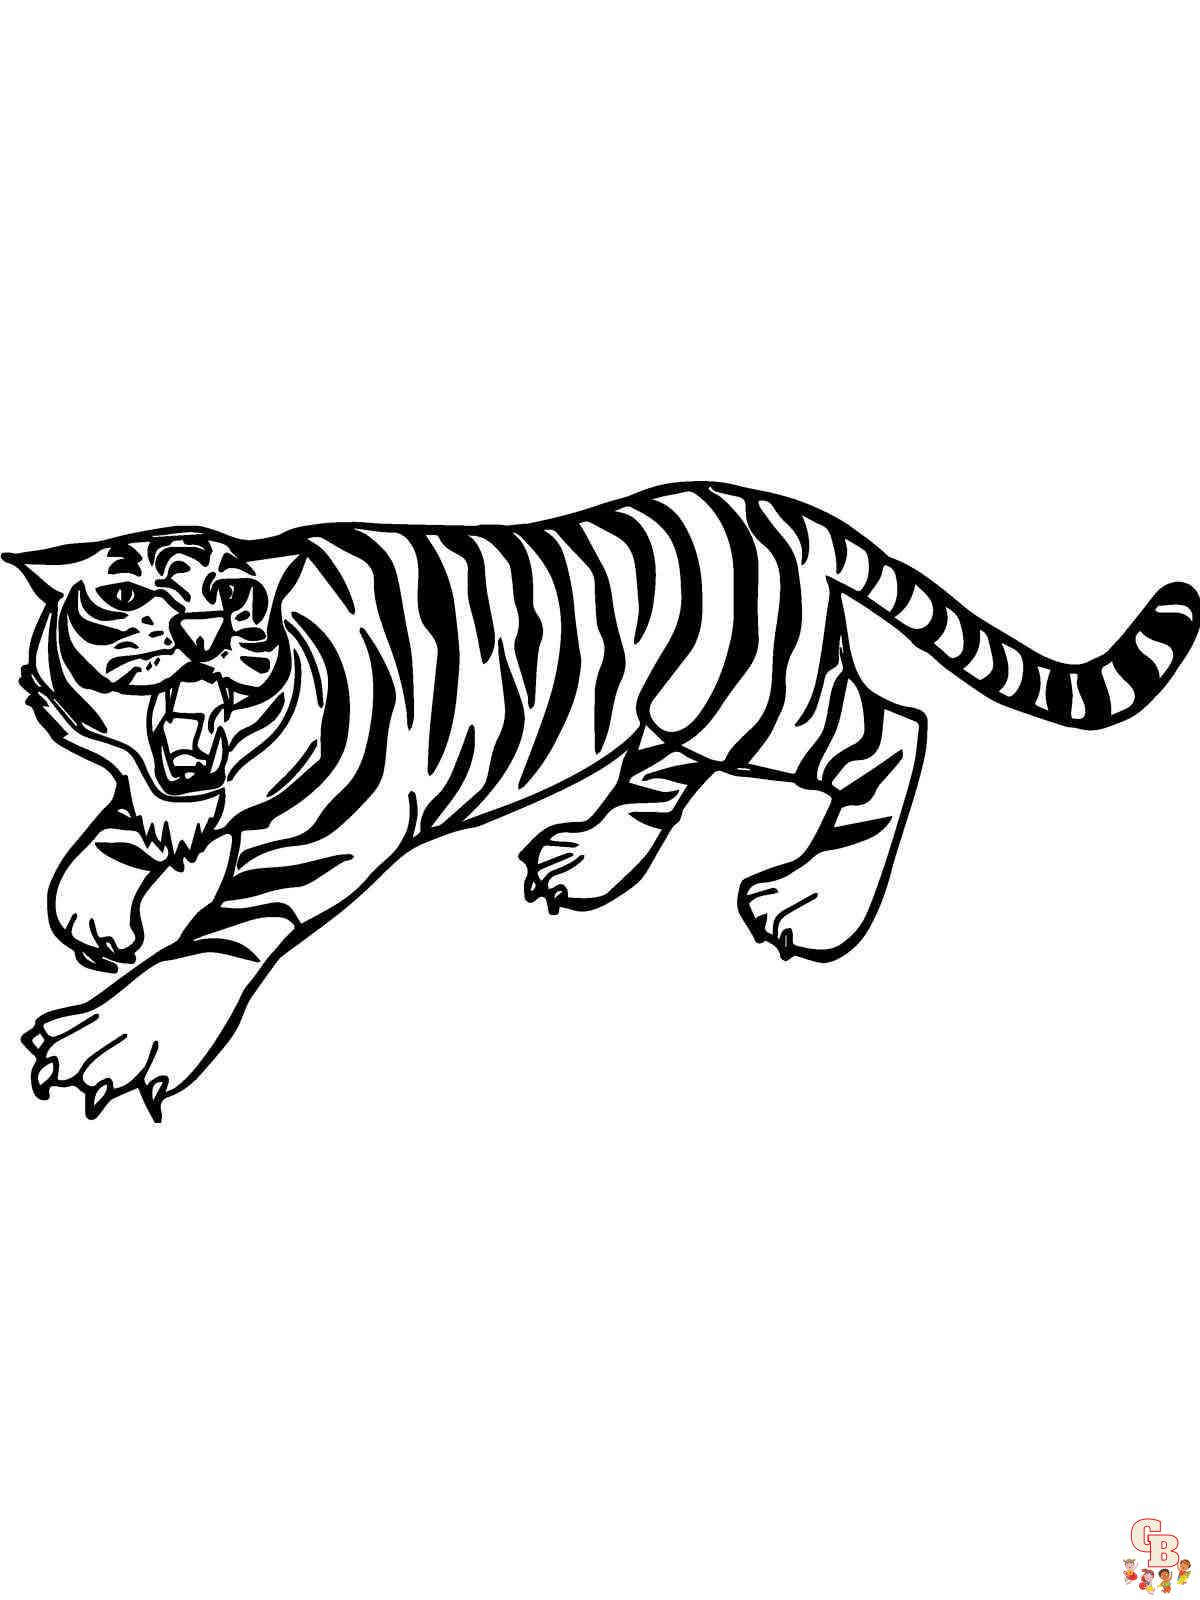 Tiger auf der Jagd ausmalbilder zum ausdrucken